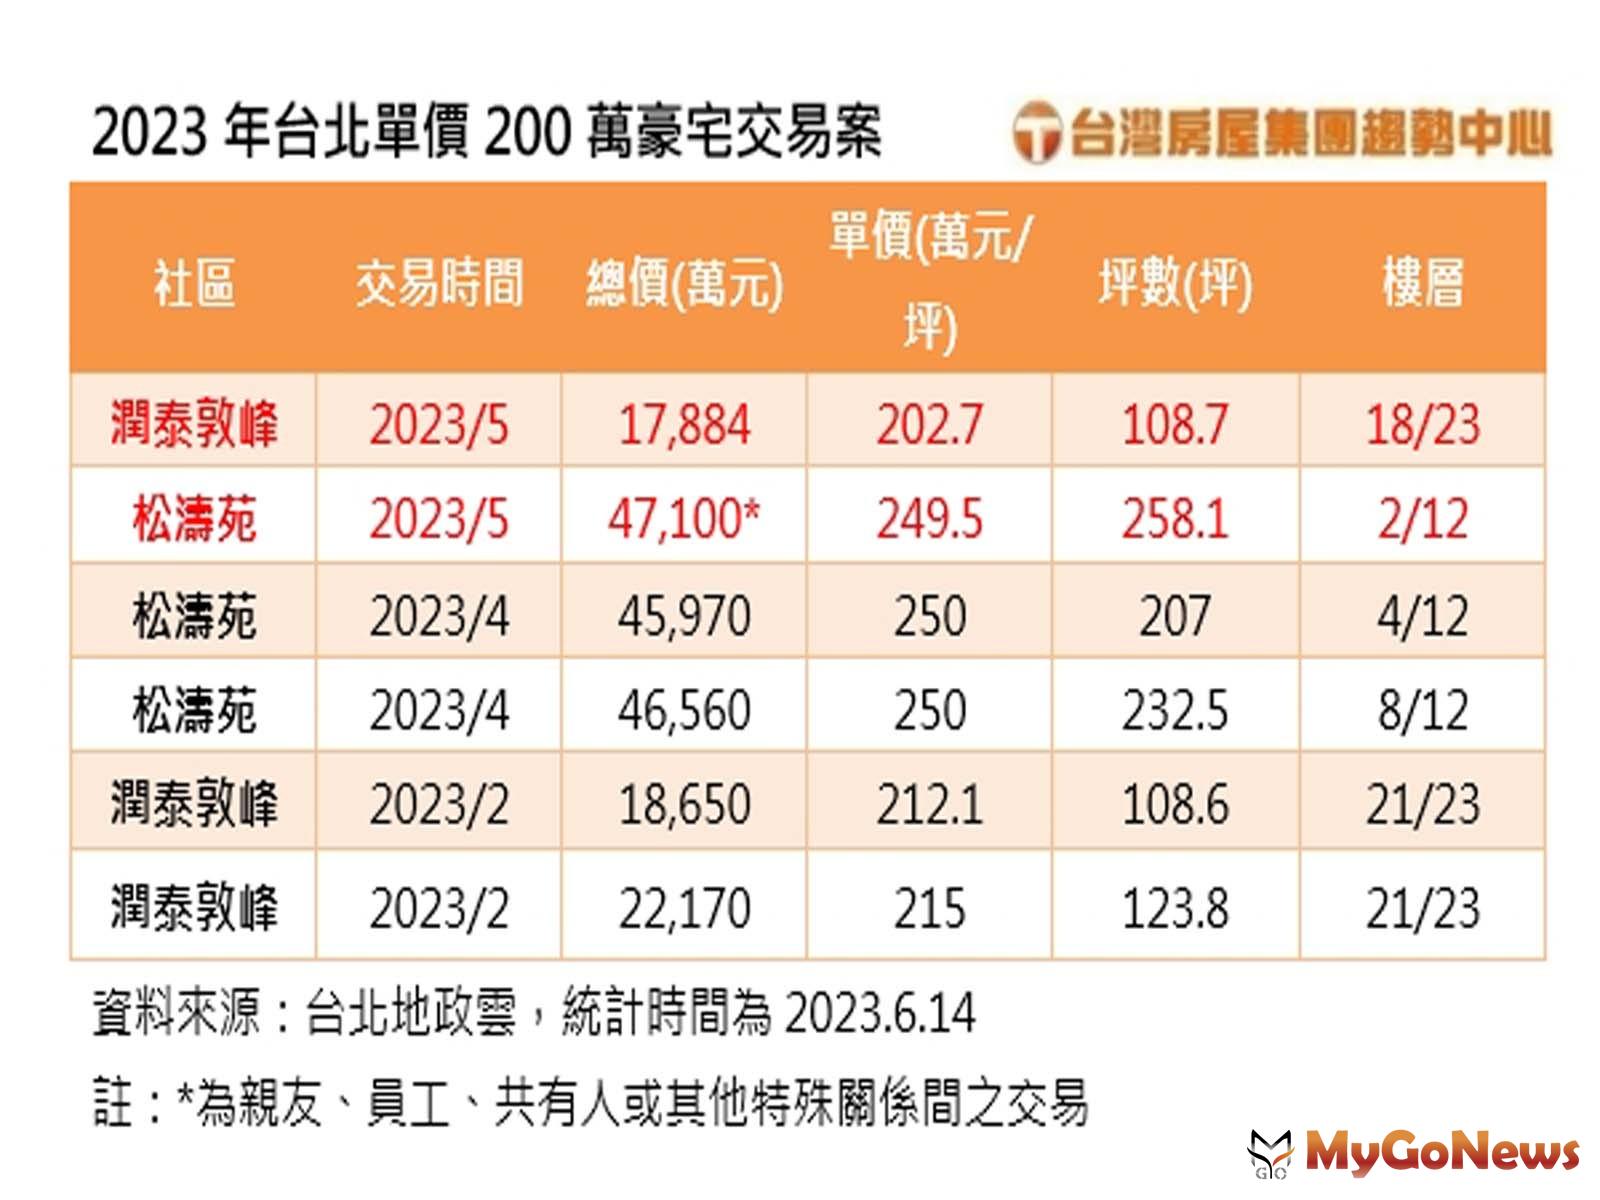 2023年台北單價200萬豪宅交易案(台灣房屋提供) MyGoNews房地產新聞 市場快訊